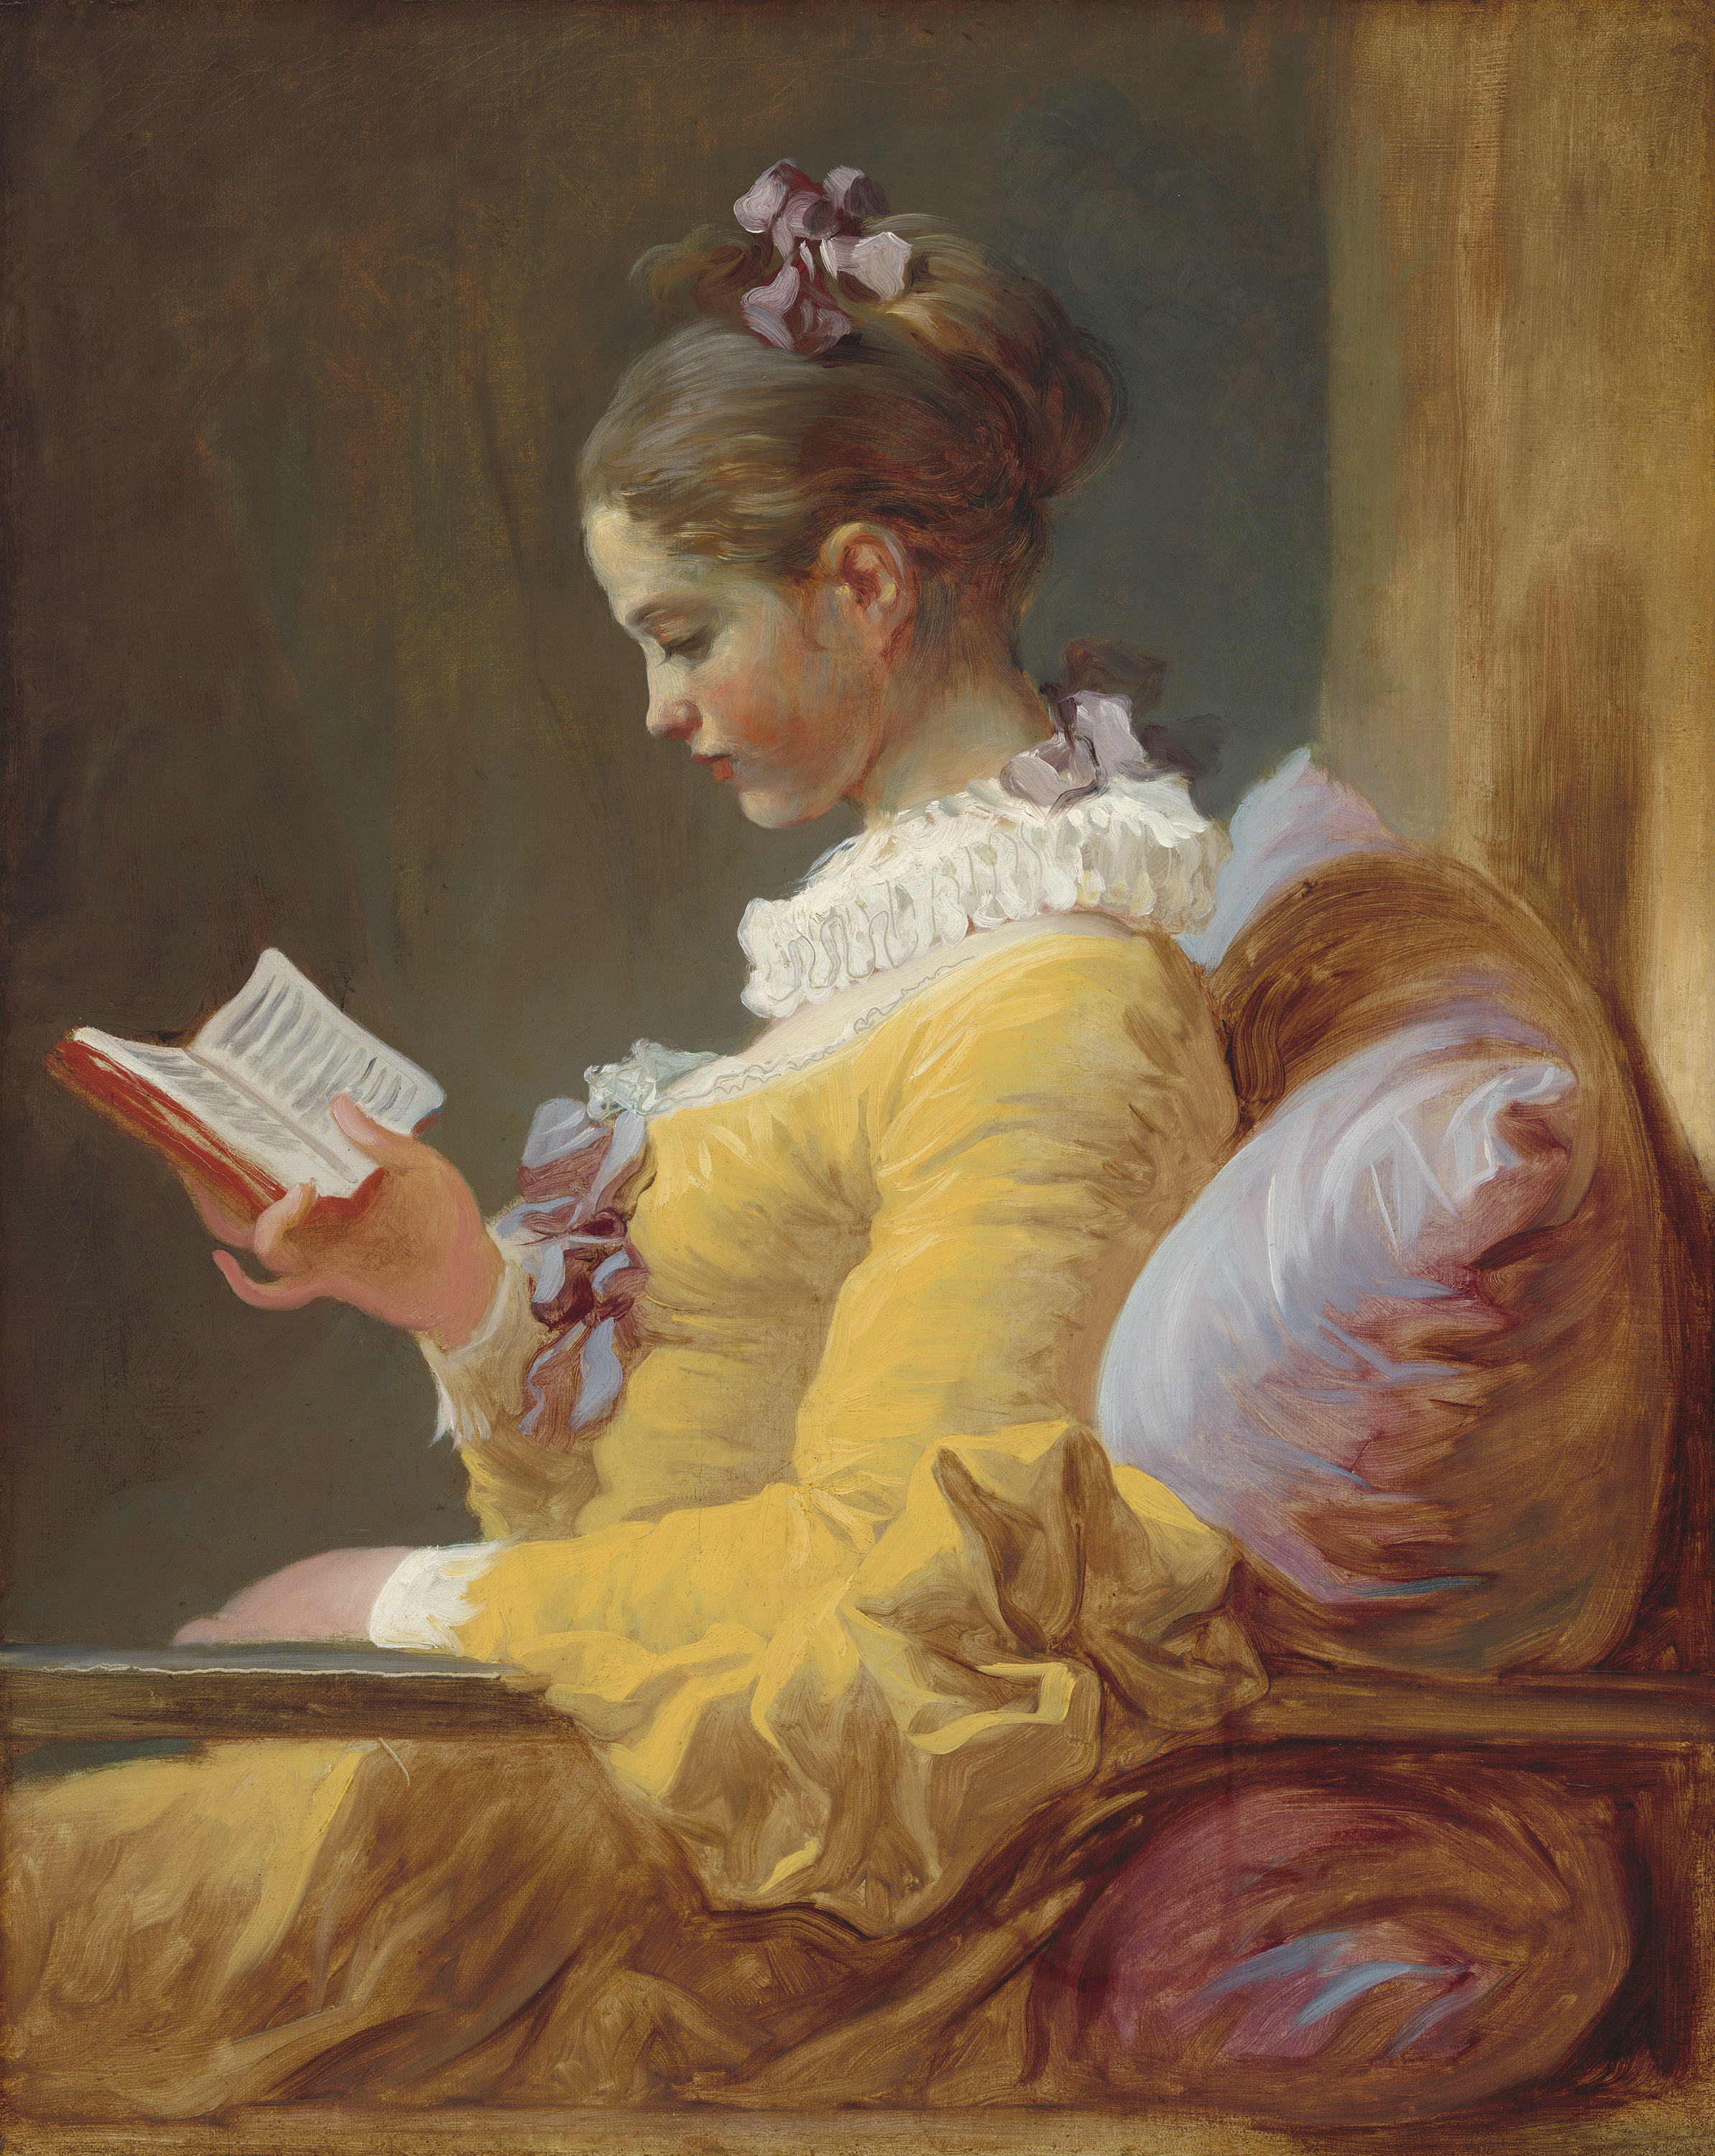 Читающая девушка by Jean-Honoré Fragonard - ок. 1770 - 81.1 x 64.8 cm 